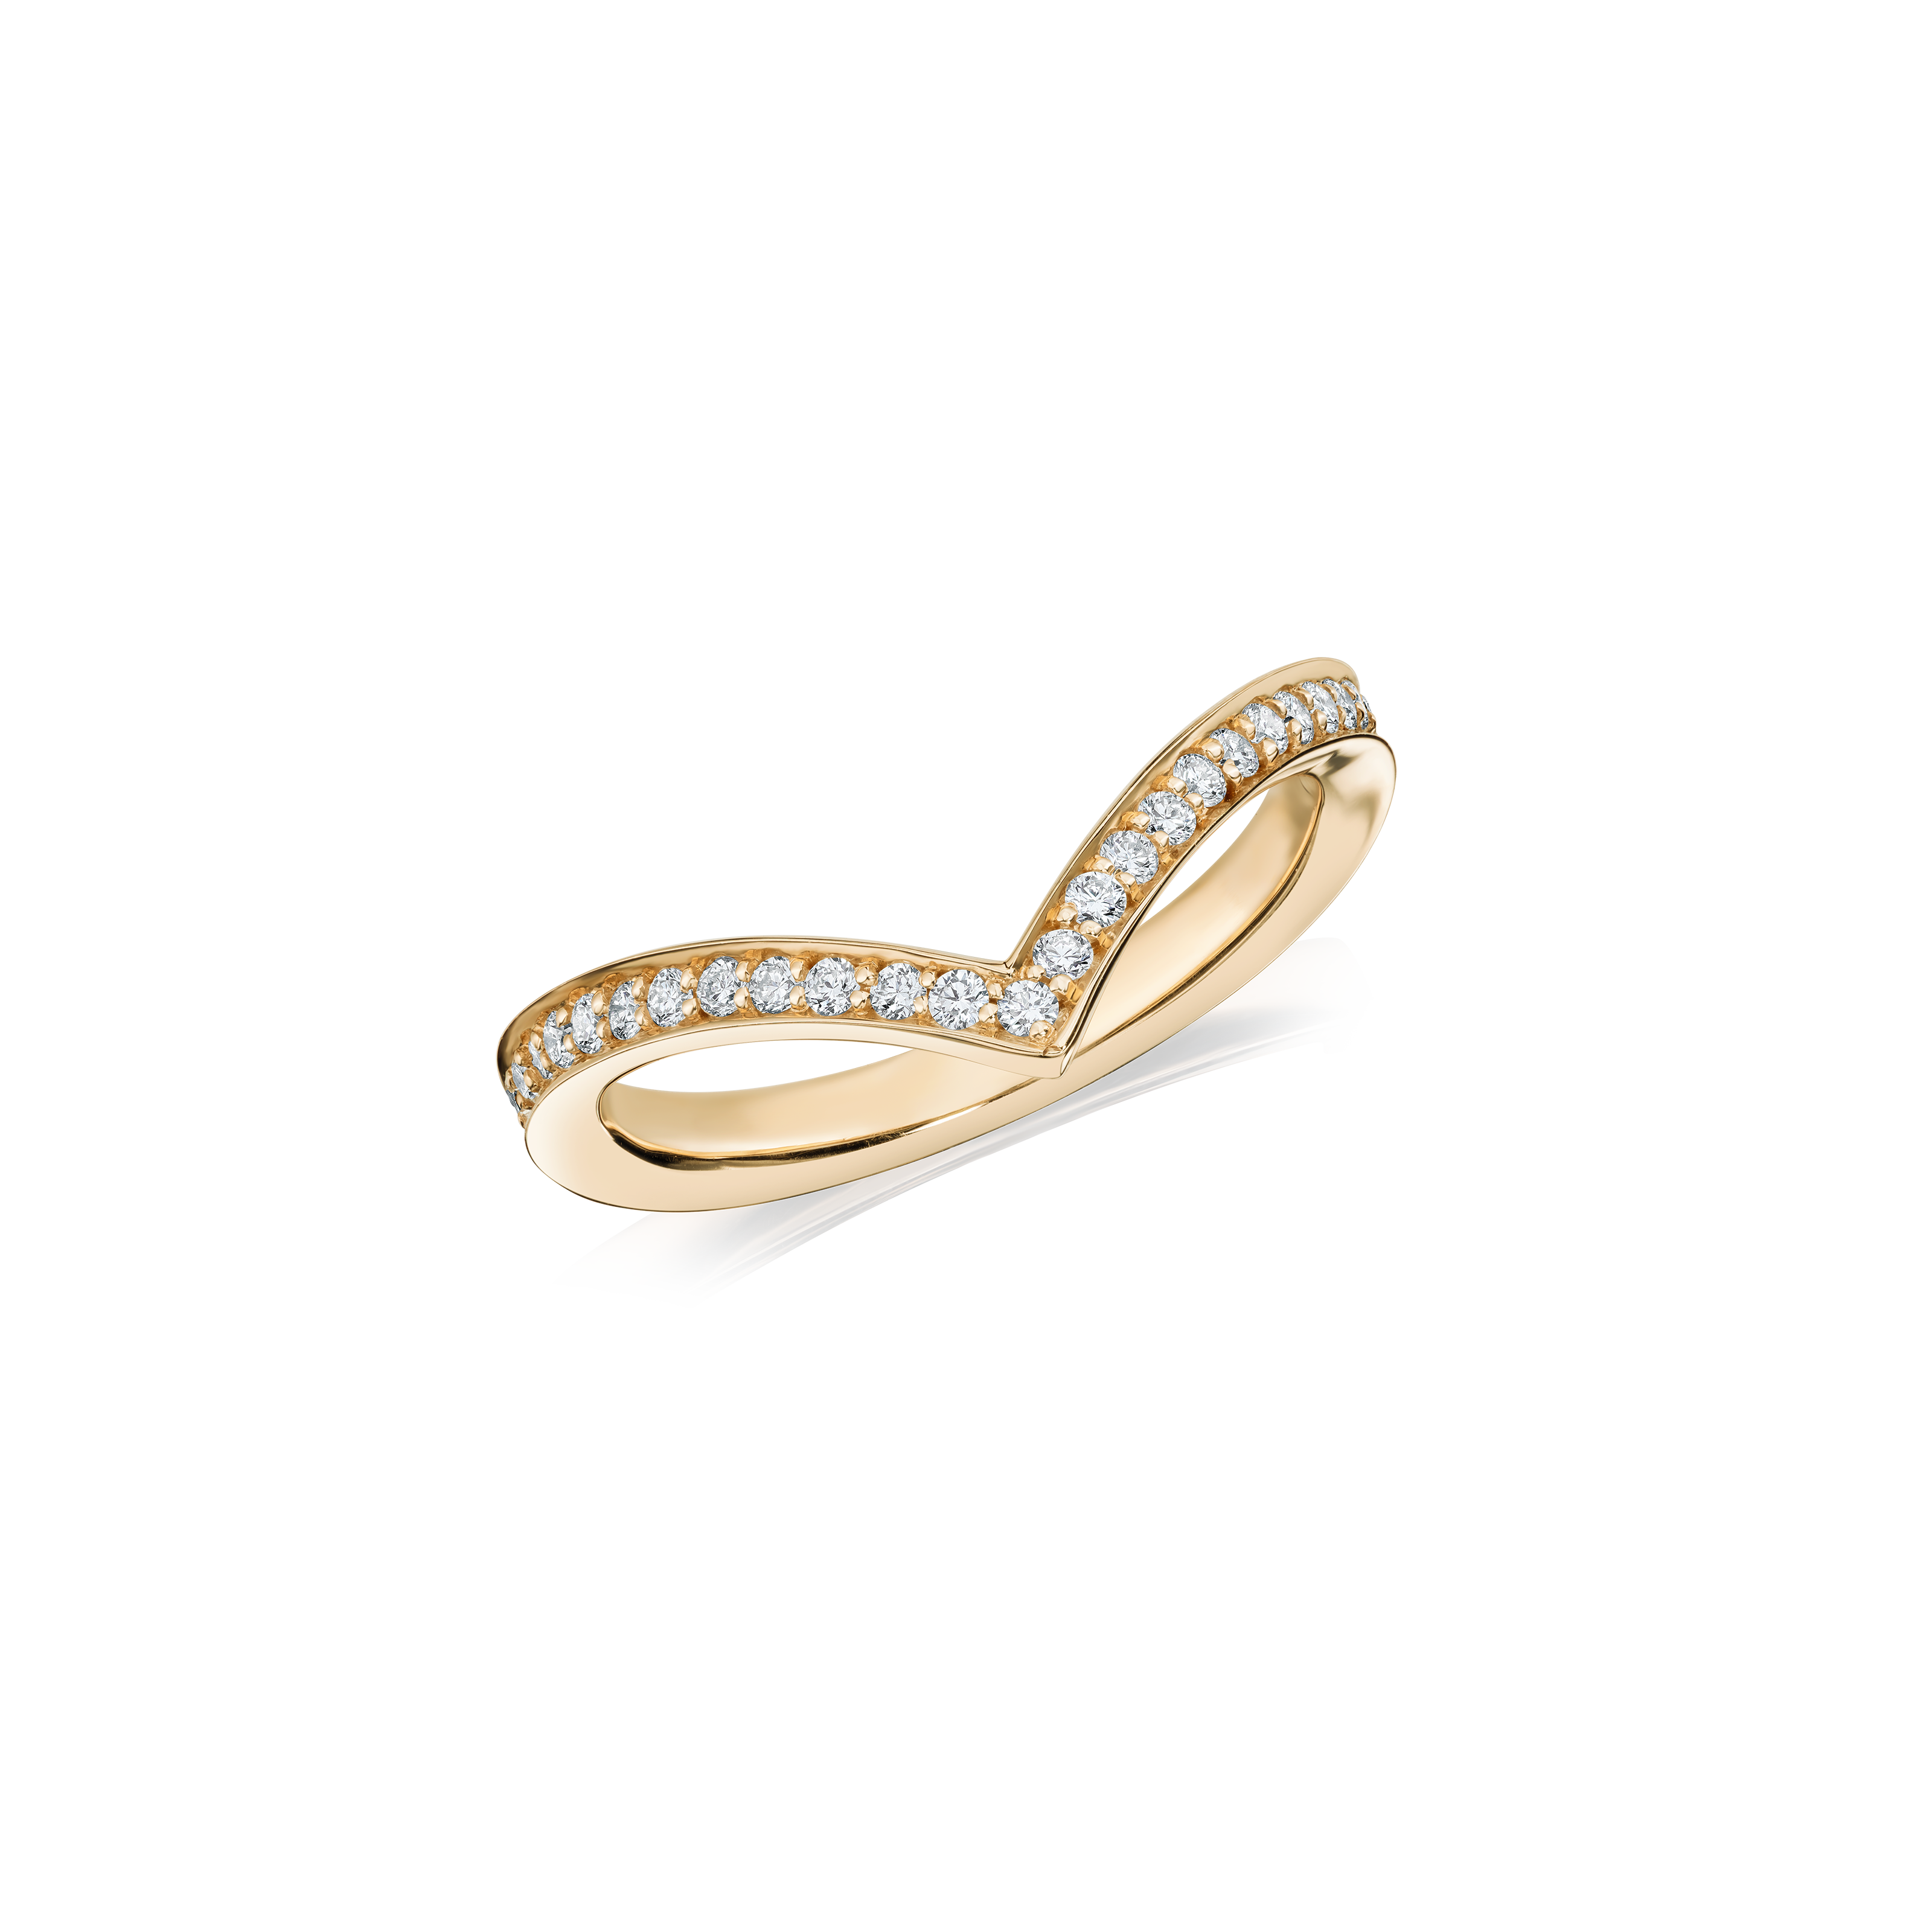 18ct Yellow Gold Wishbone Diamond Ring